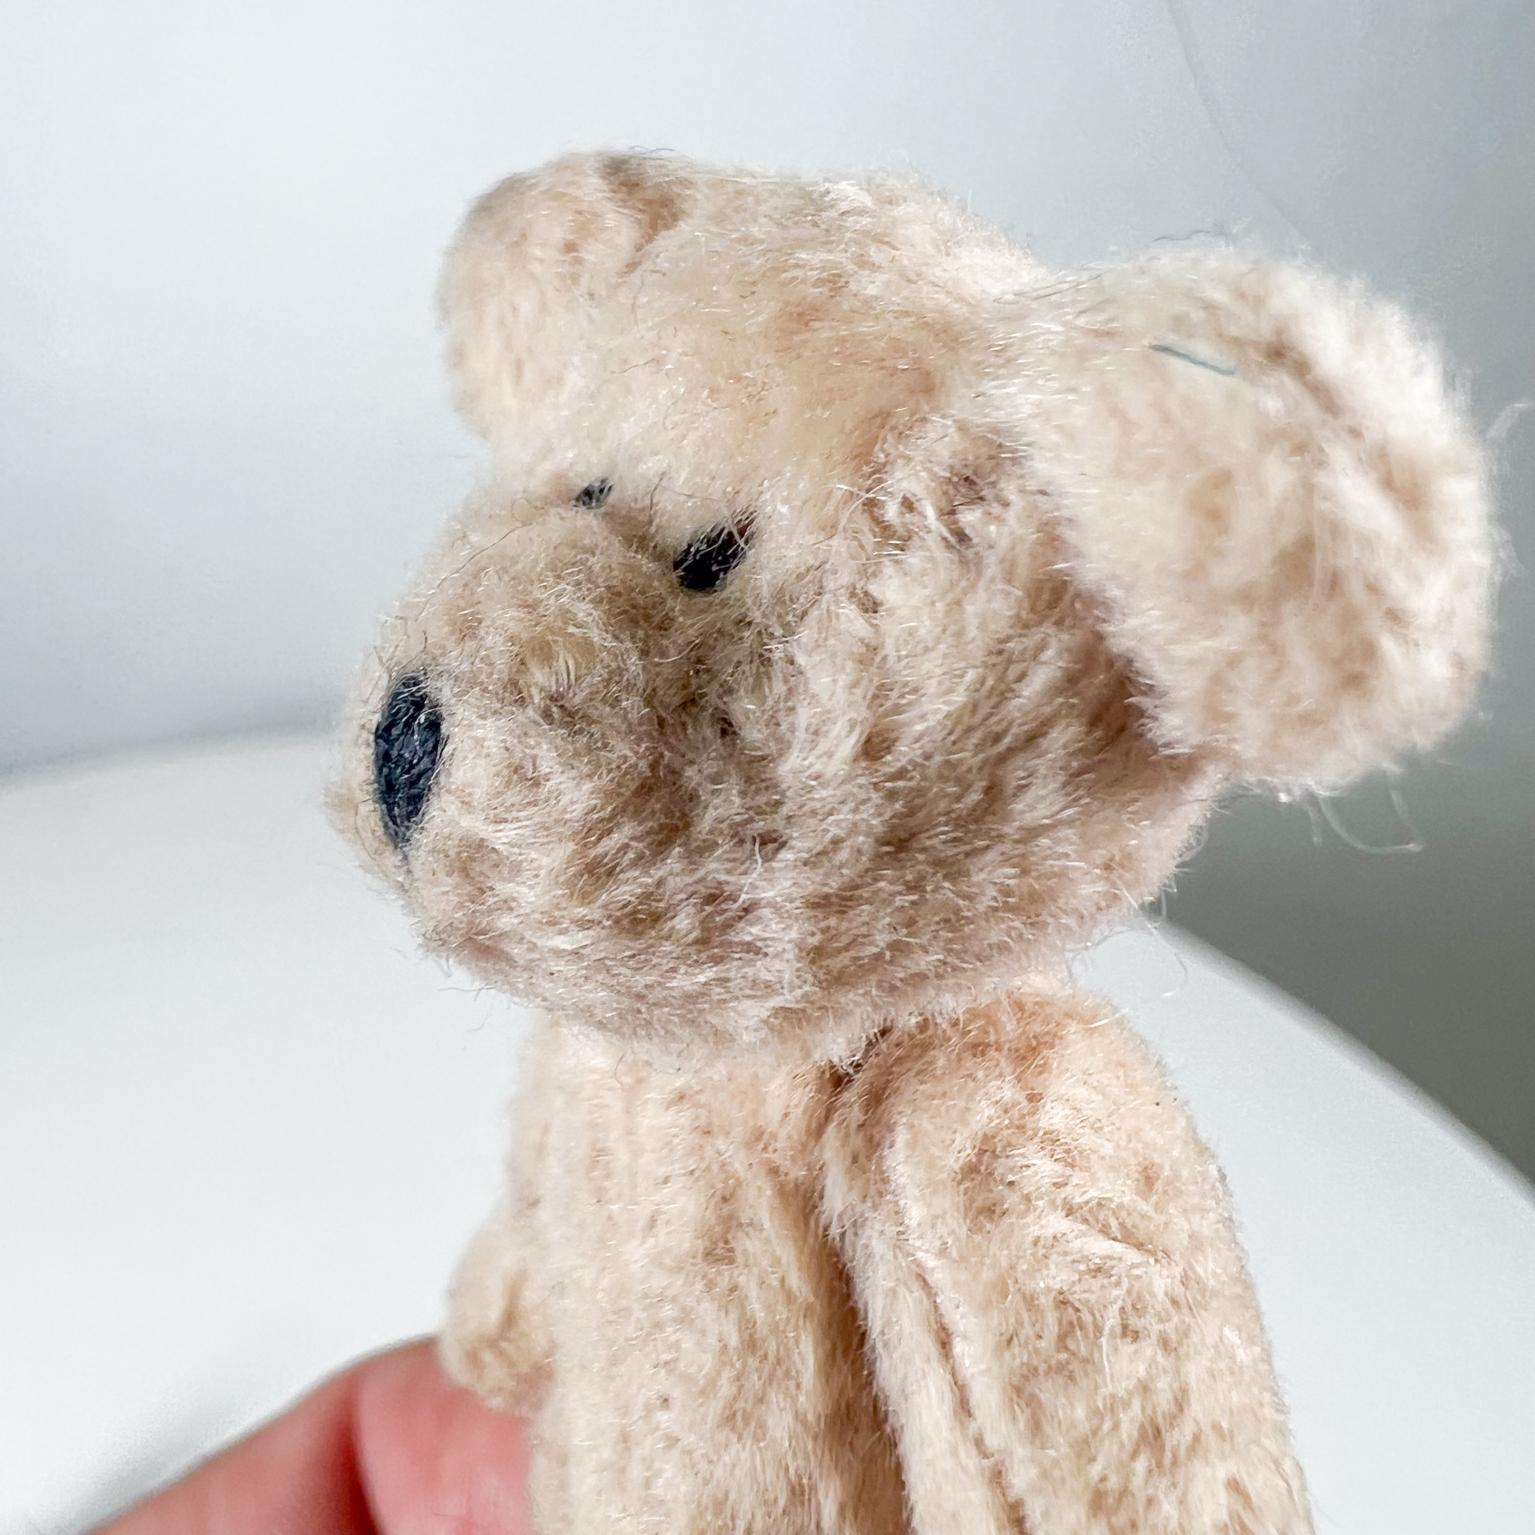 Mid 20th Century Tiny Baby Teddy Bear Soft Huggable Vintage 5